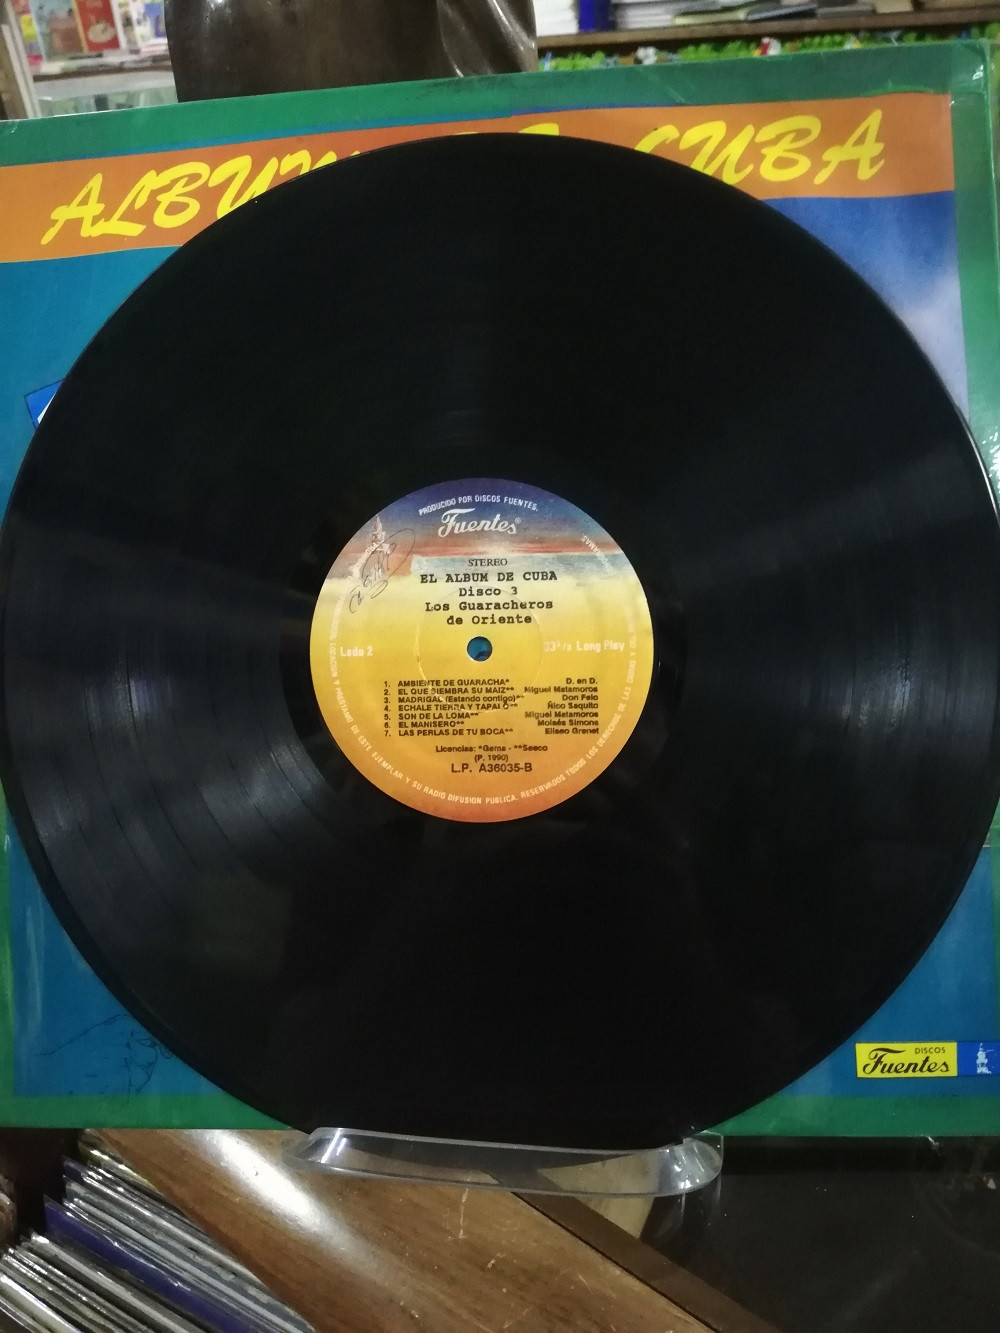 Imagen LP X 3 ALBUM DE CUBA - GUILLERMO PORTABALES/CELINA Y REUTILIO/GUARACHEROS DE ORIENTE 8